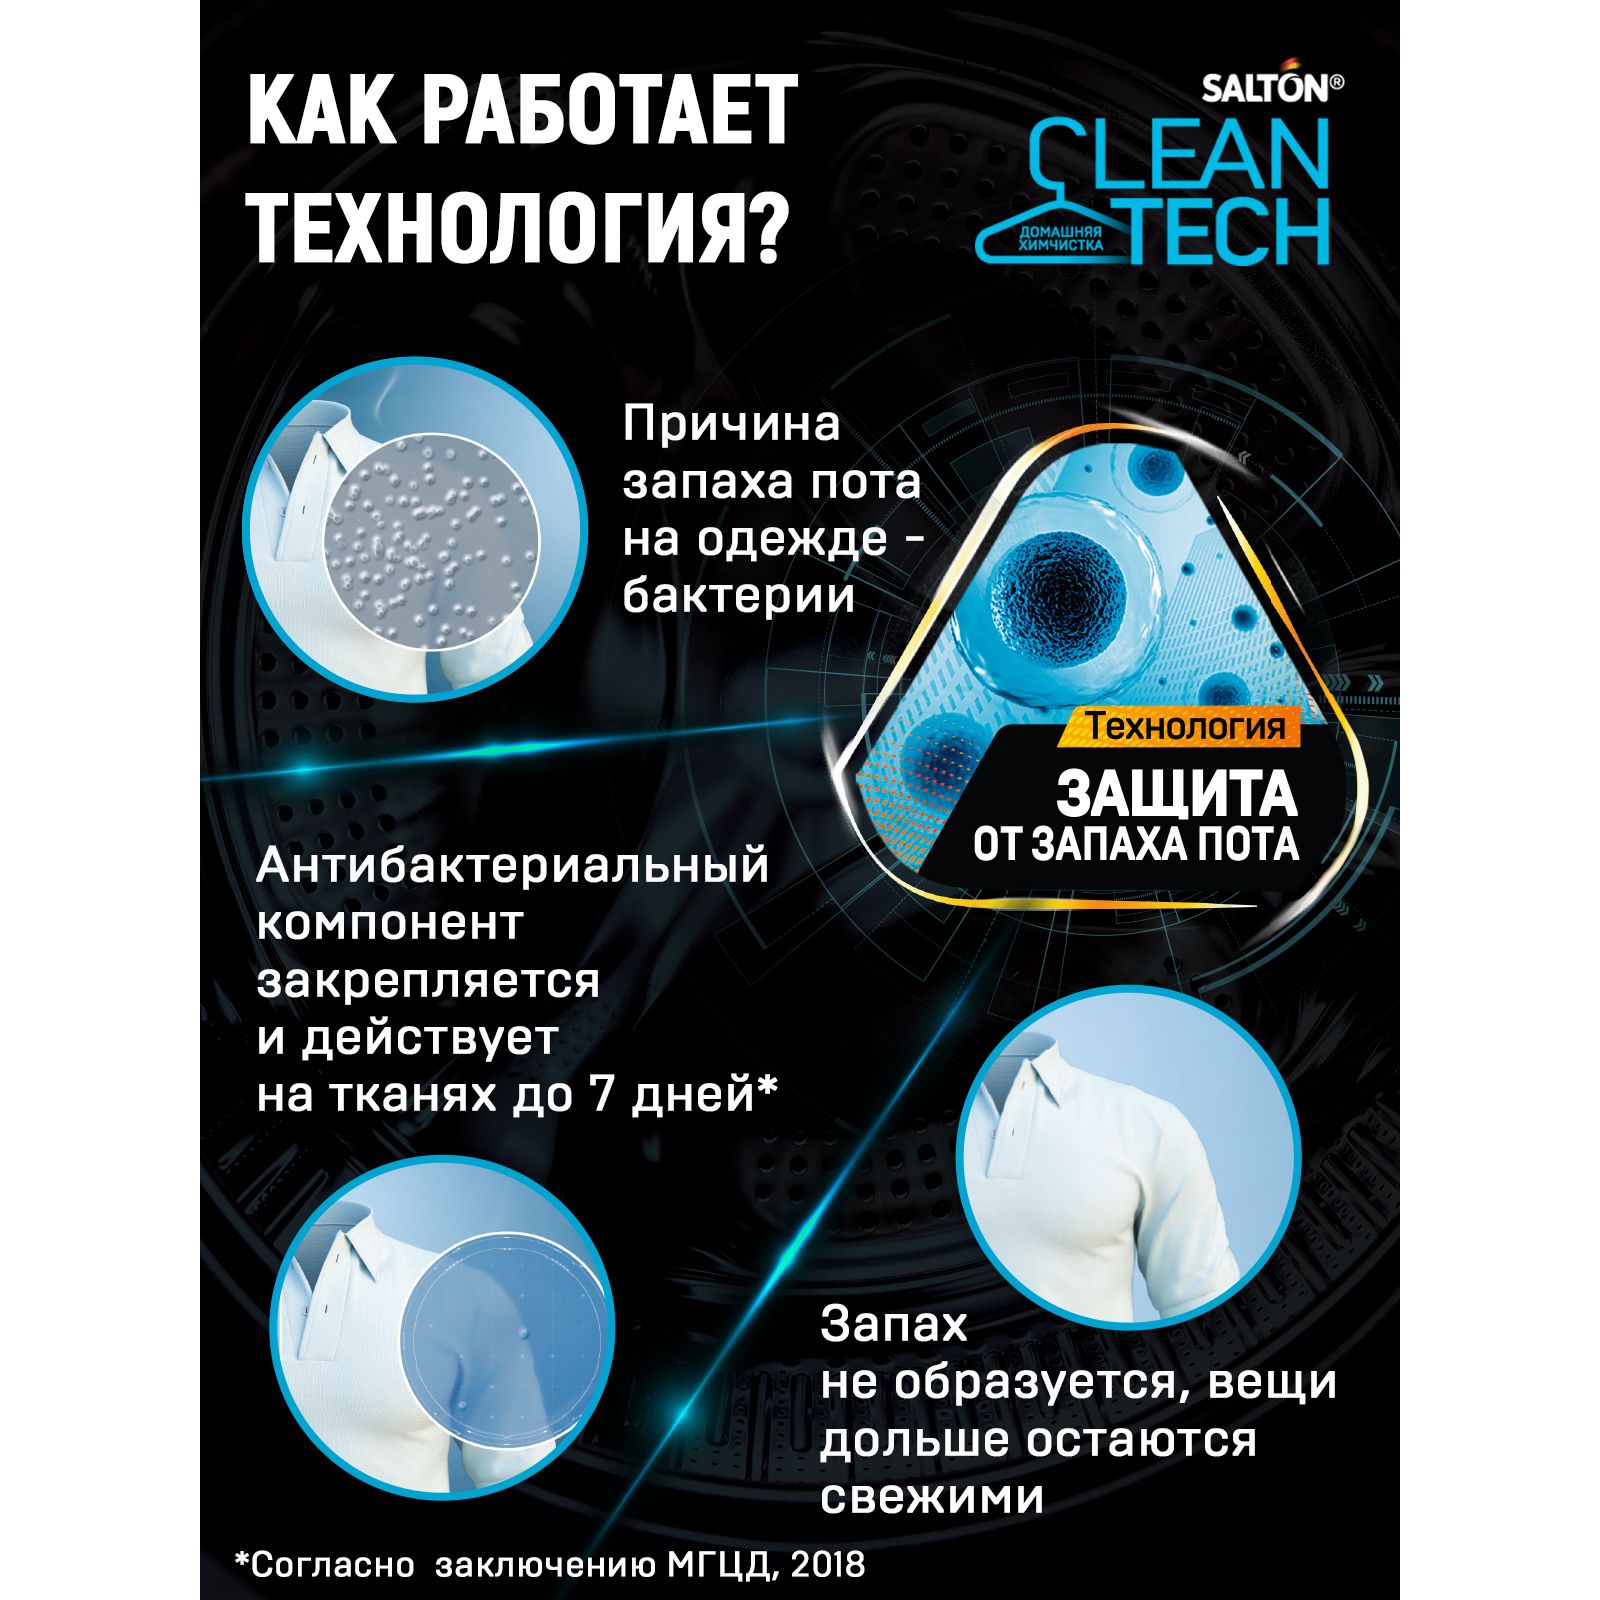 Гель для стирки Salton Cleantech спорт с эффектом защиты от запаха пота 500 мл - фото 6